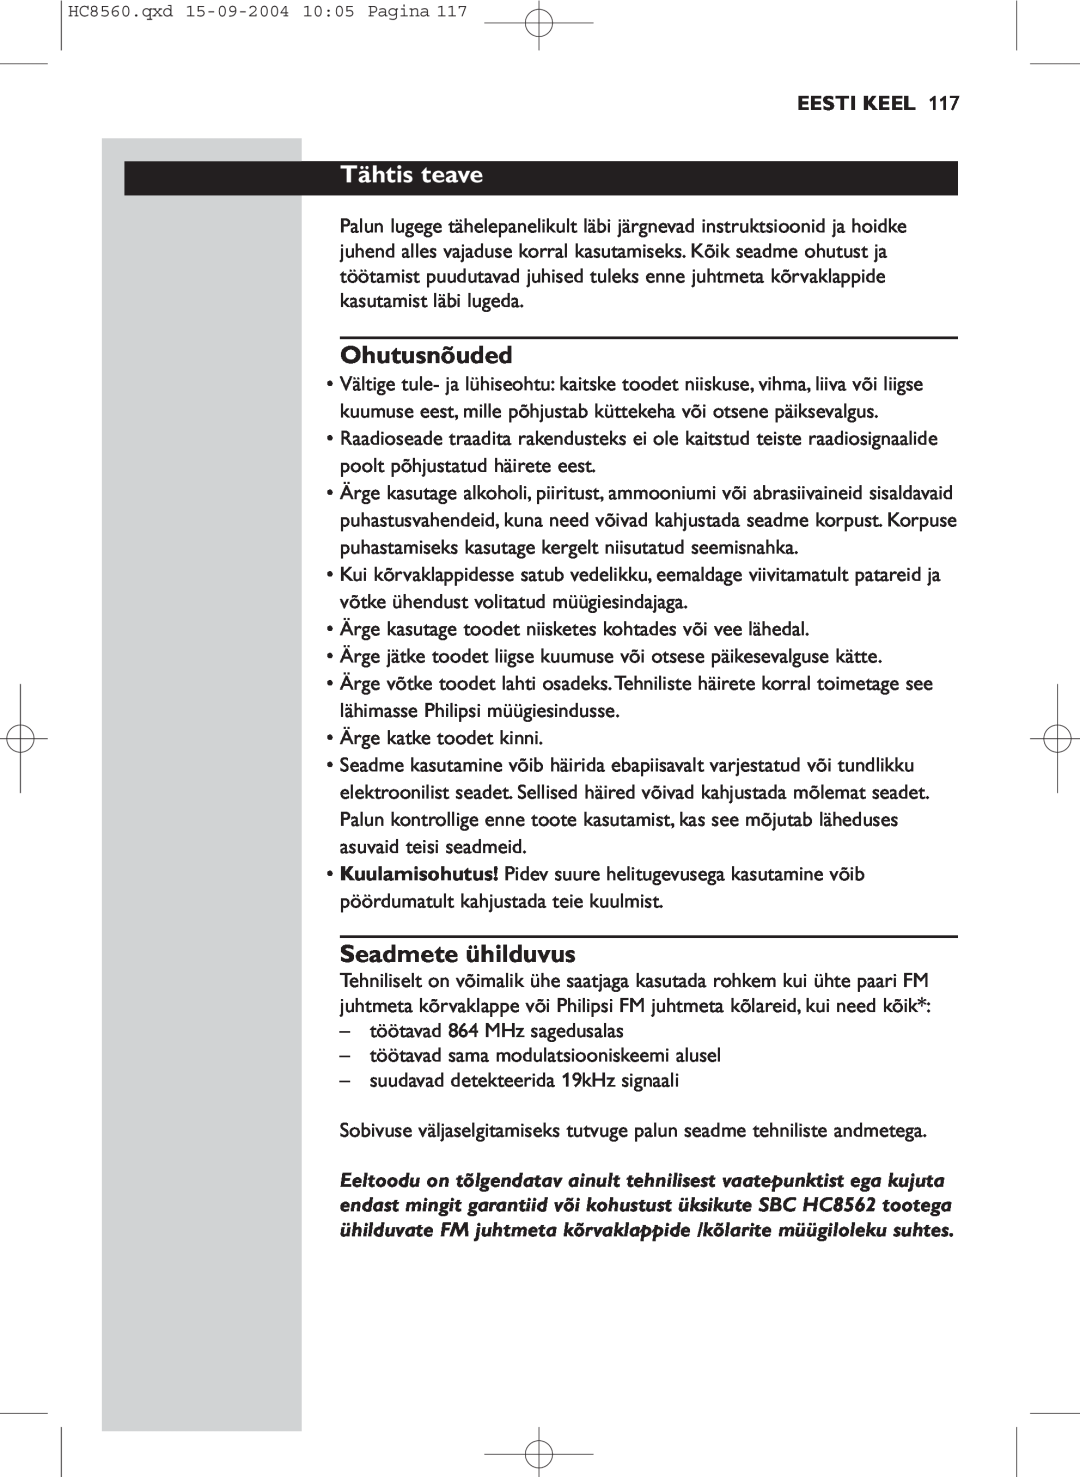 Philips HC 8560 manual Tähtis teave, Ohutusnõuded, Seadmete ühilduvus, Eesti Keel 